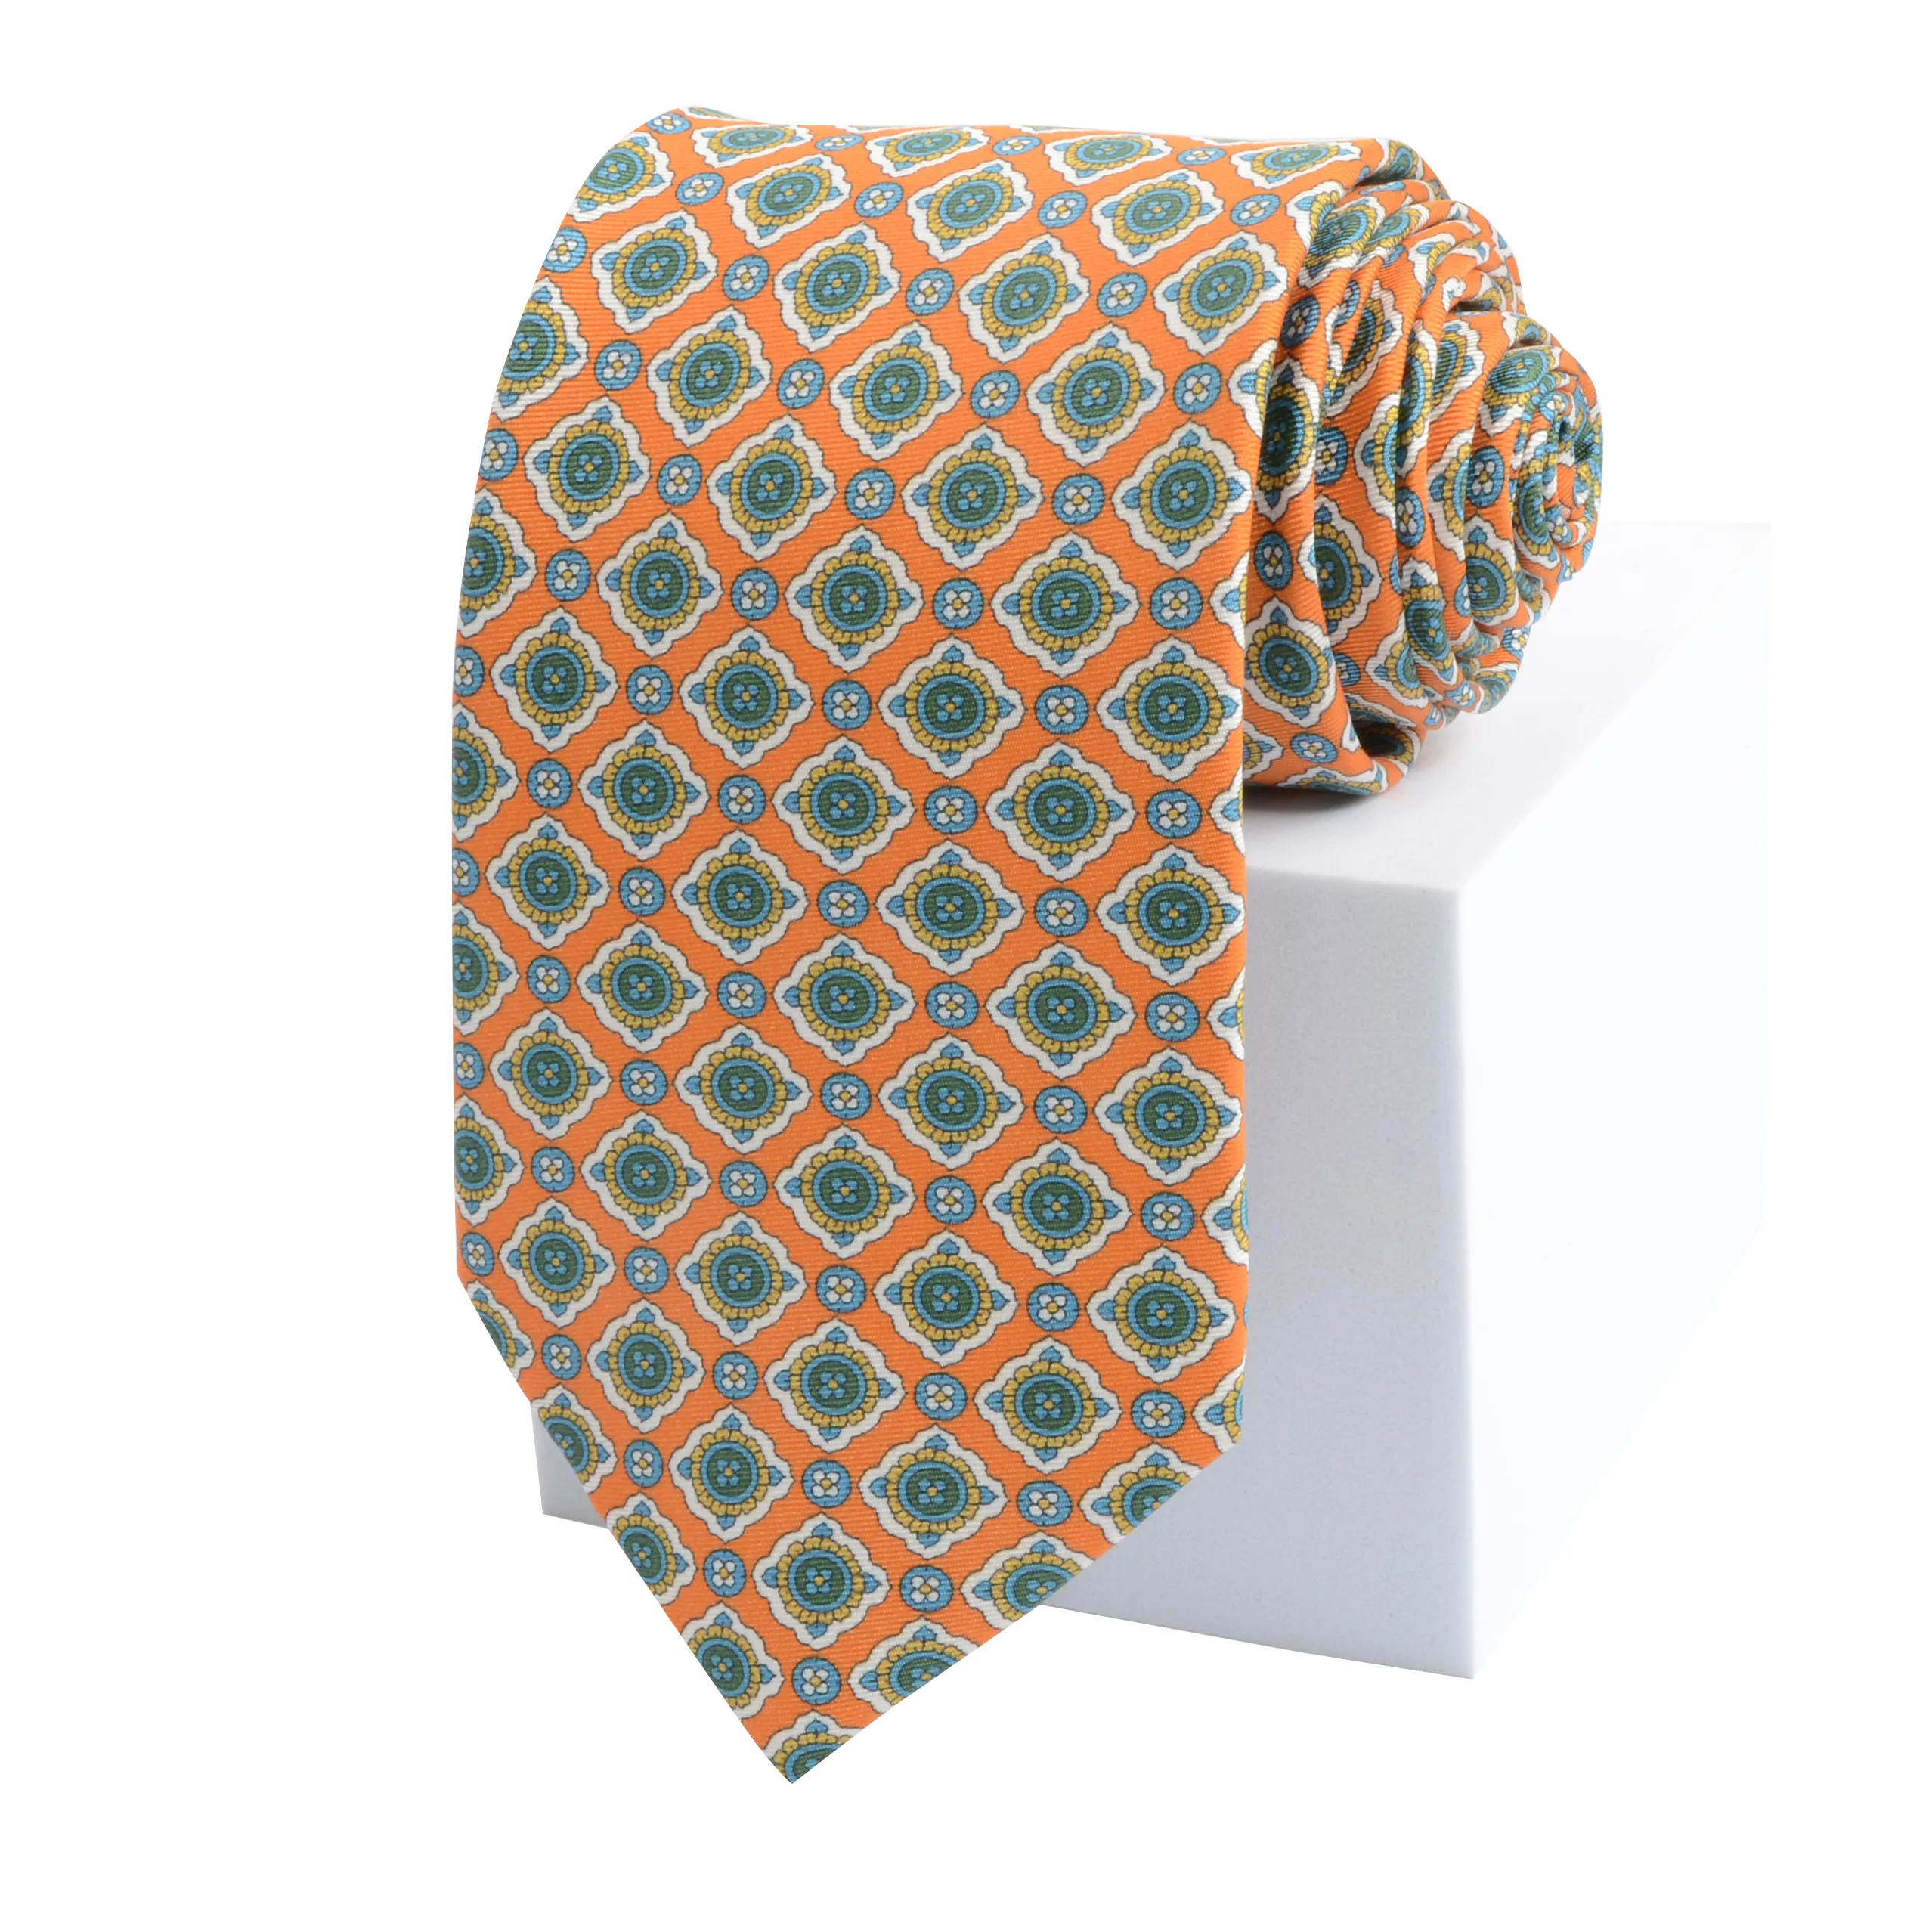 Hamocigia OEM Manufacture 100% Silk Printed fabric Necktie